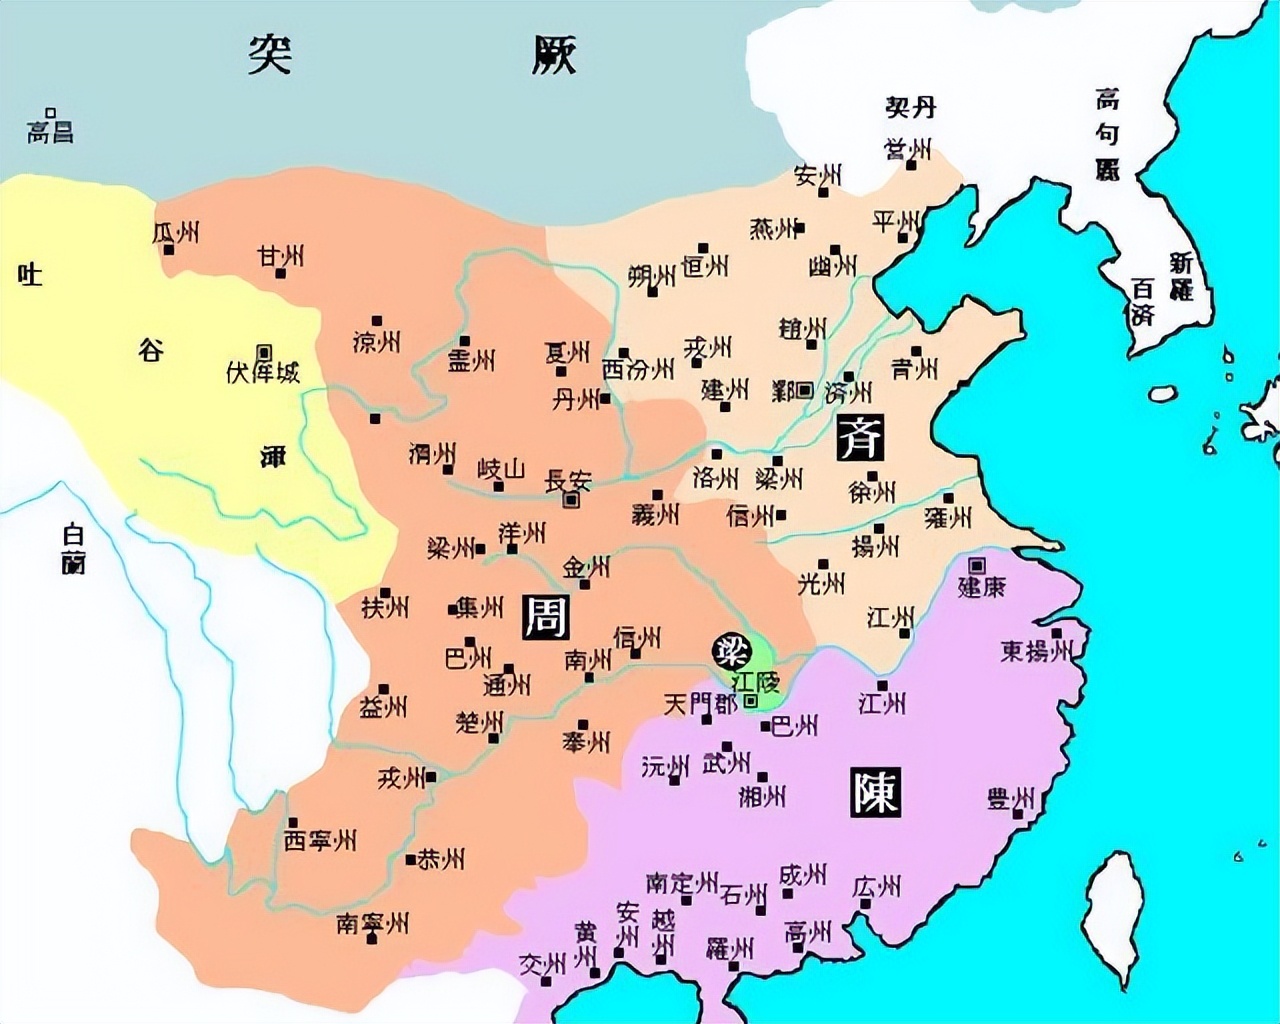 三国时期行政区域划分图片